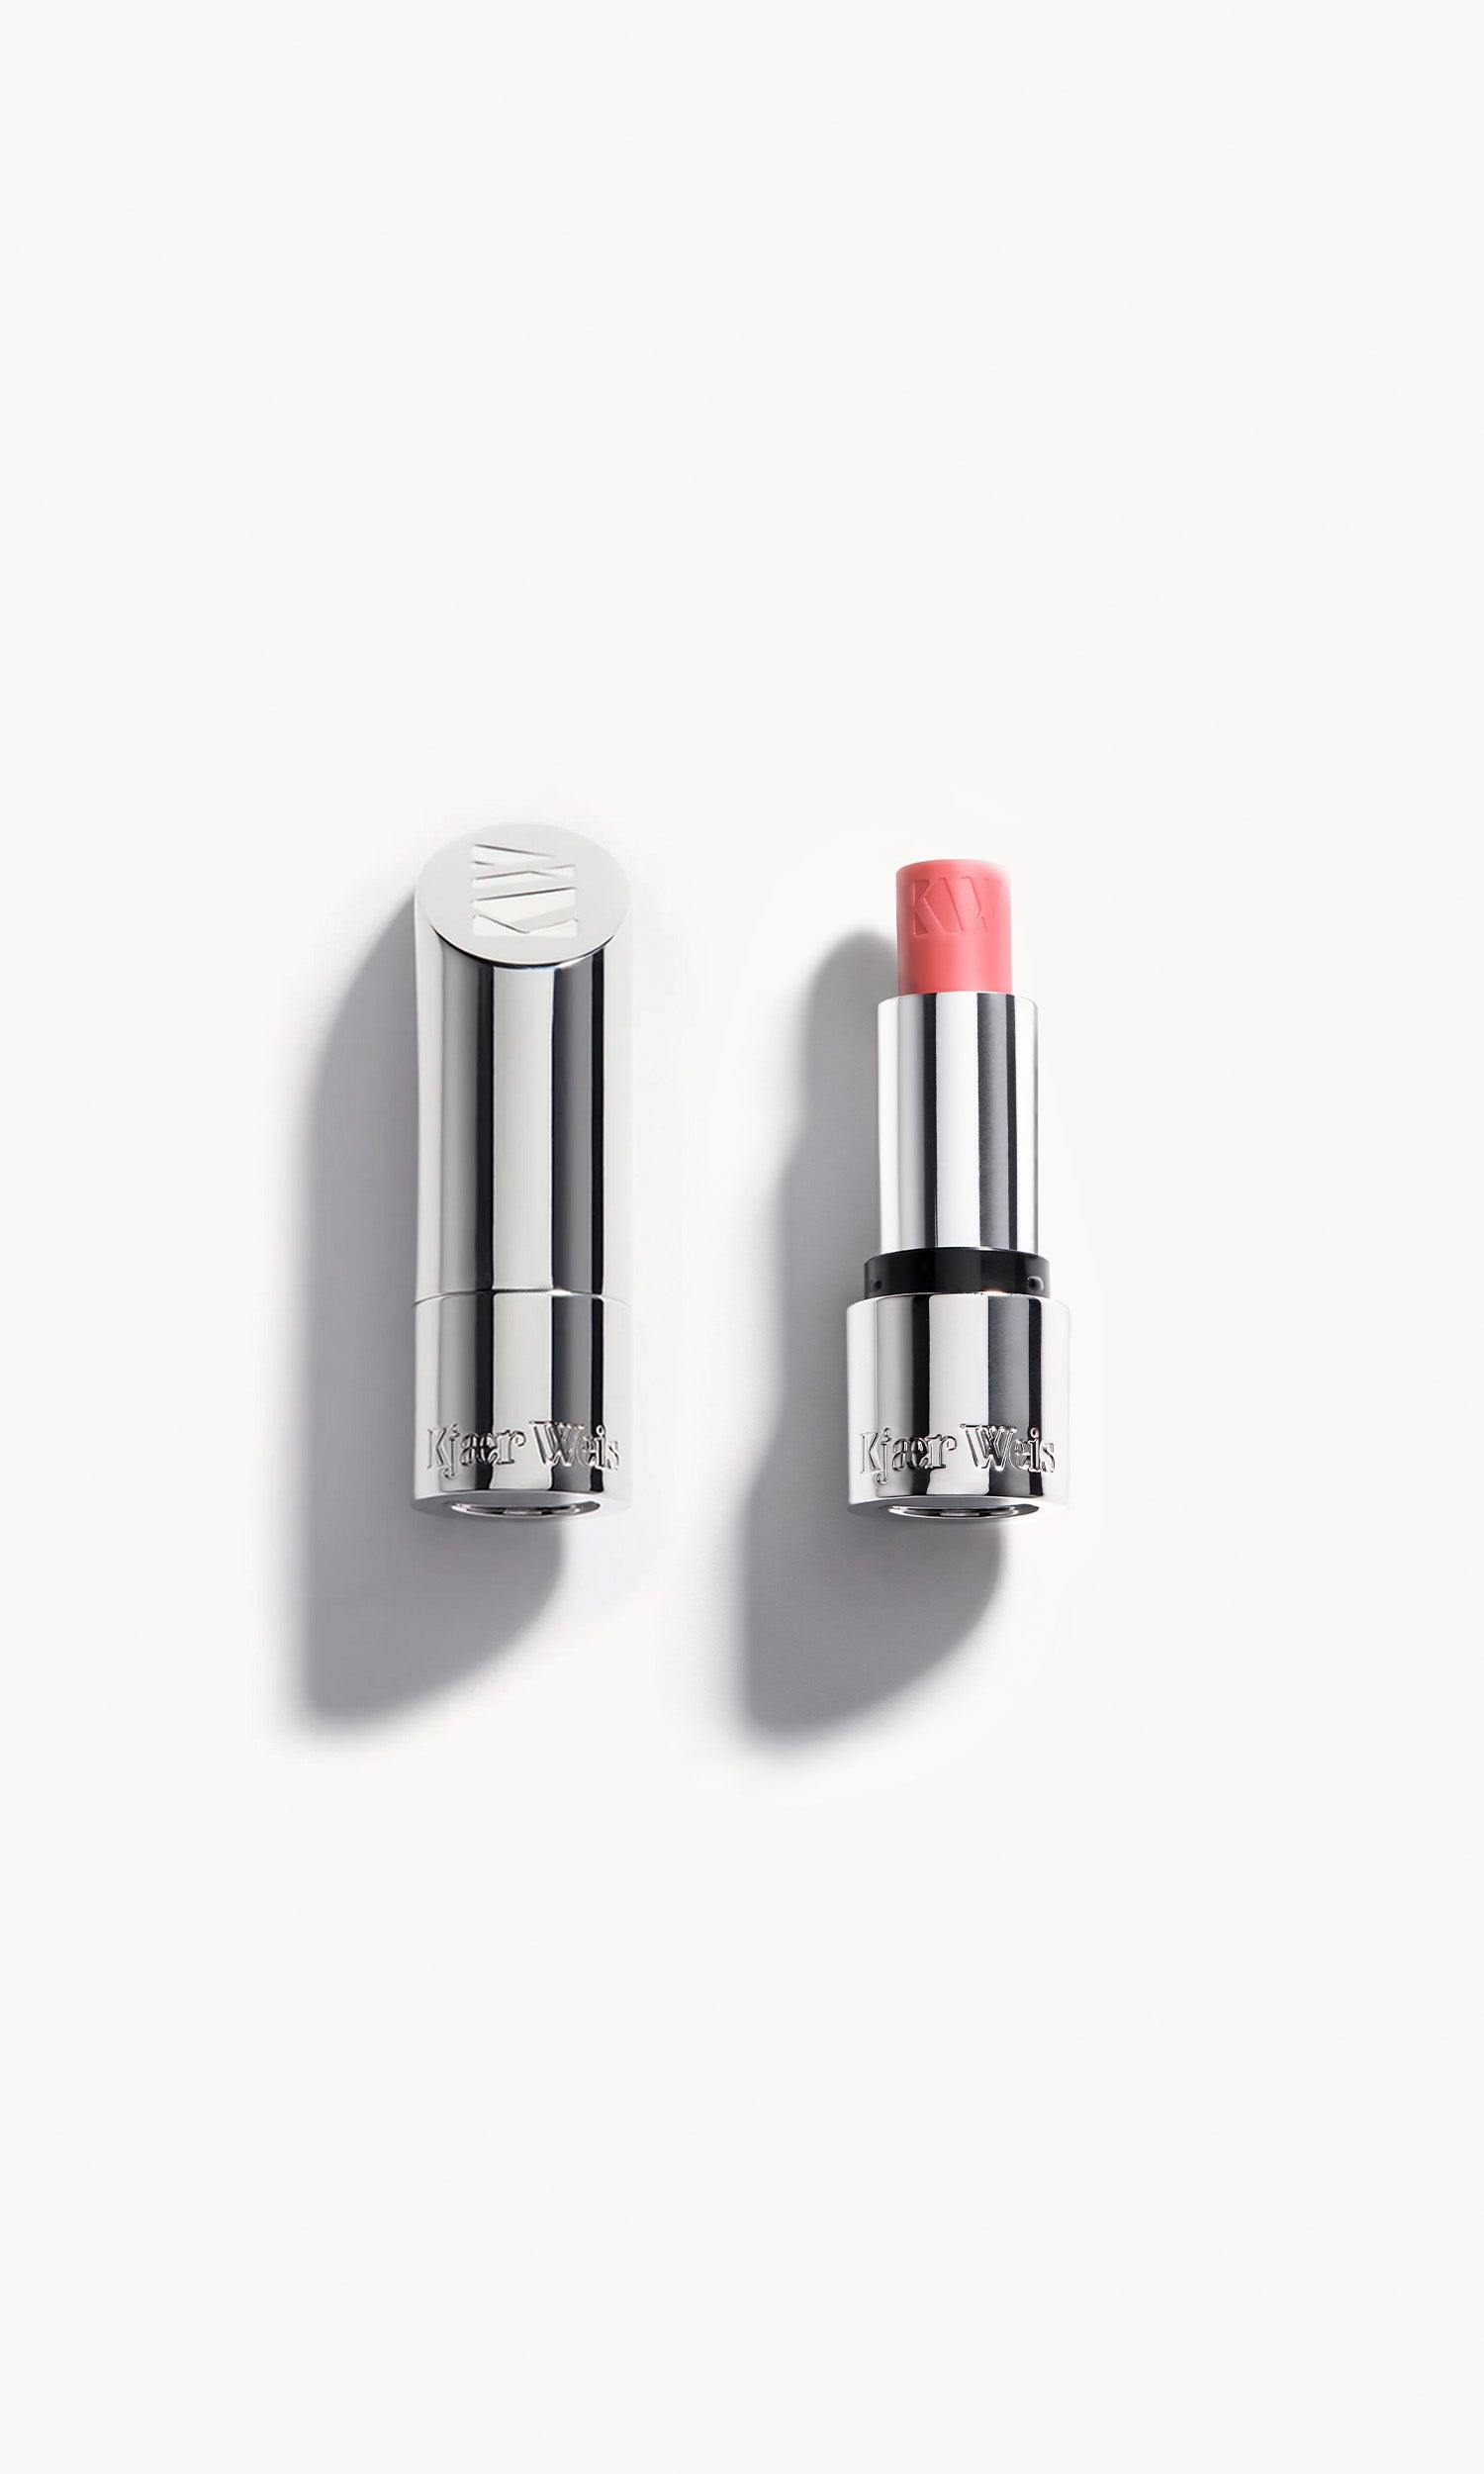 Son dưỡng Dior Addict Lip Glow UltraPink dưỡng mềm và tăng sắc môi  008  hồng xinh new